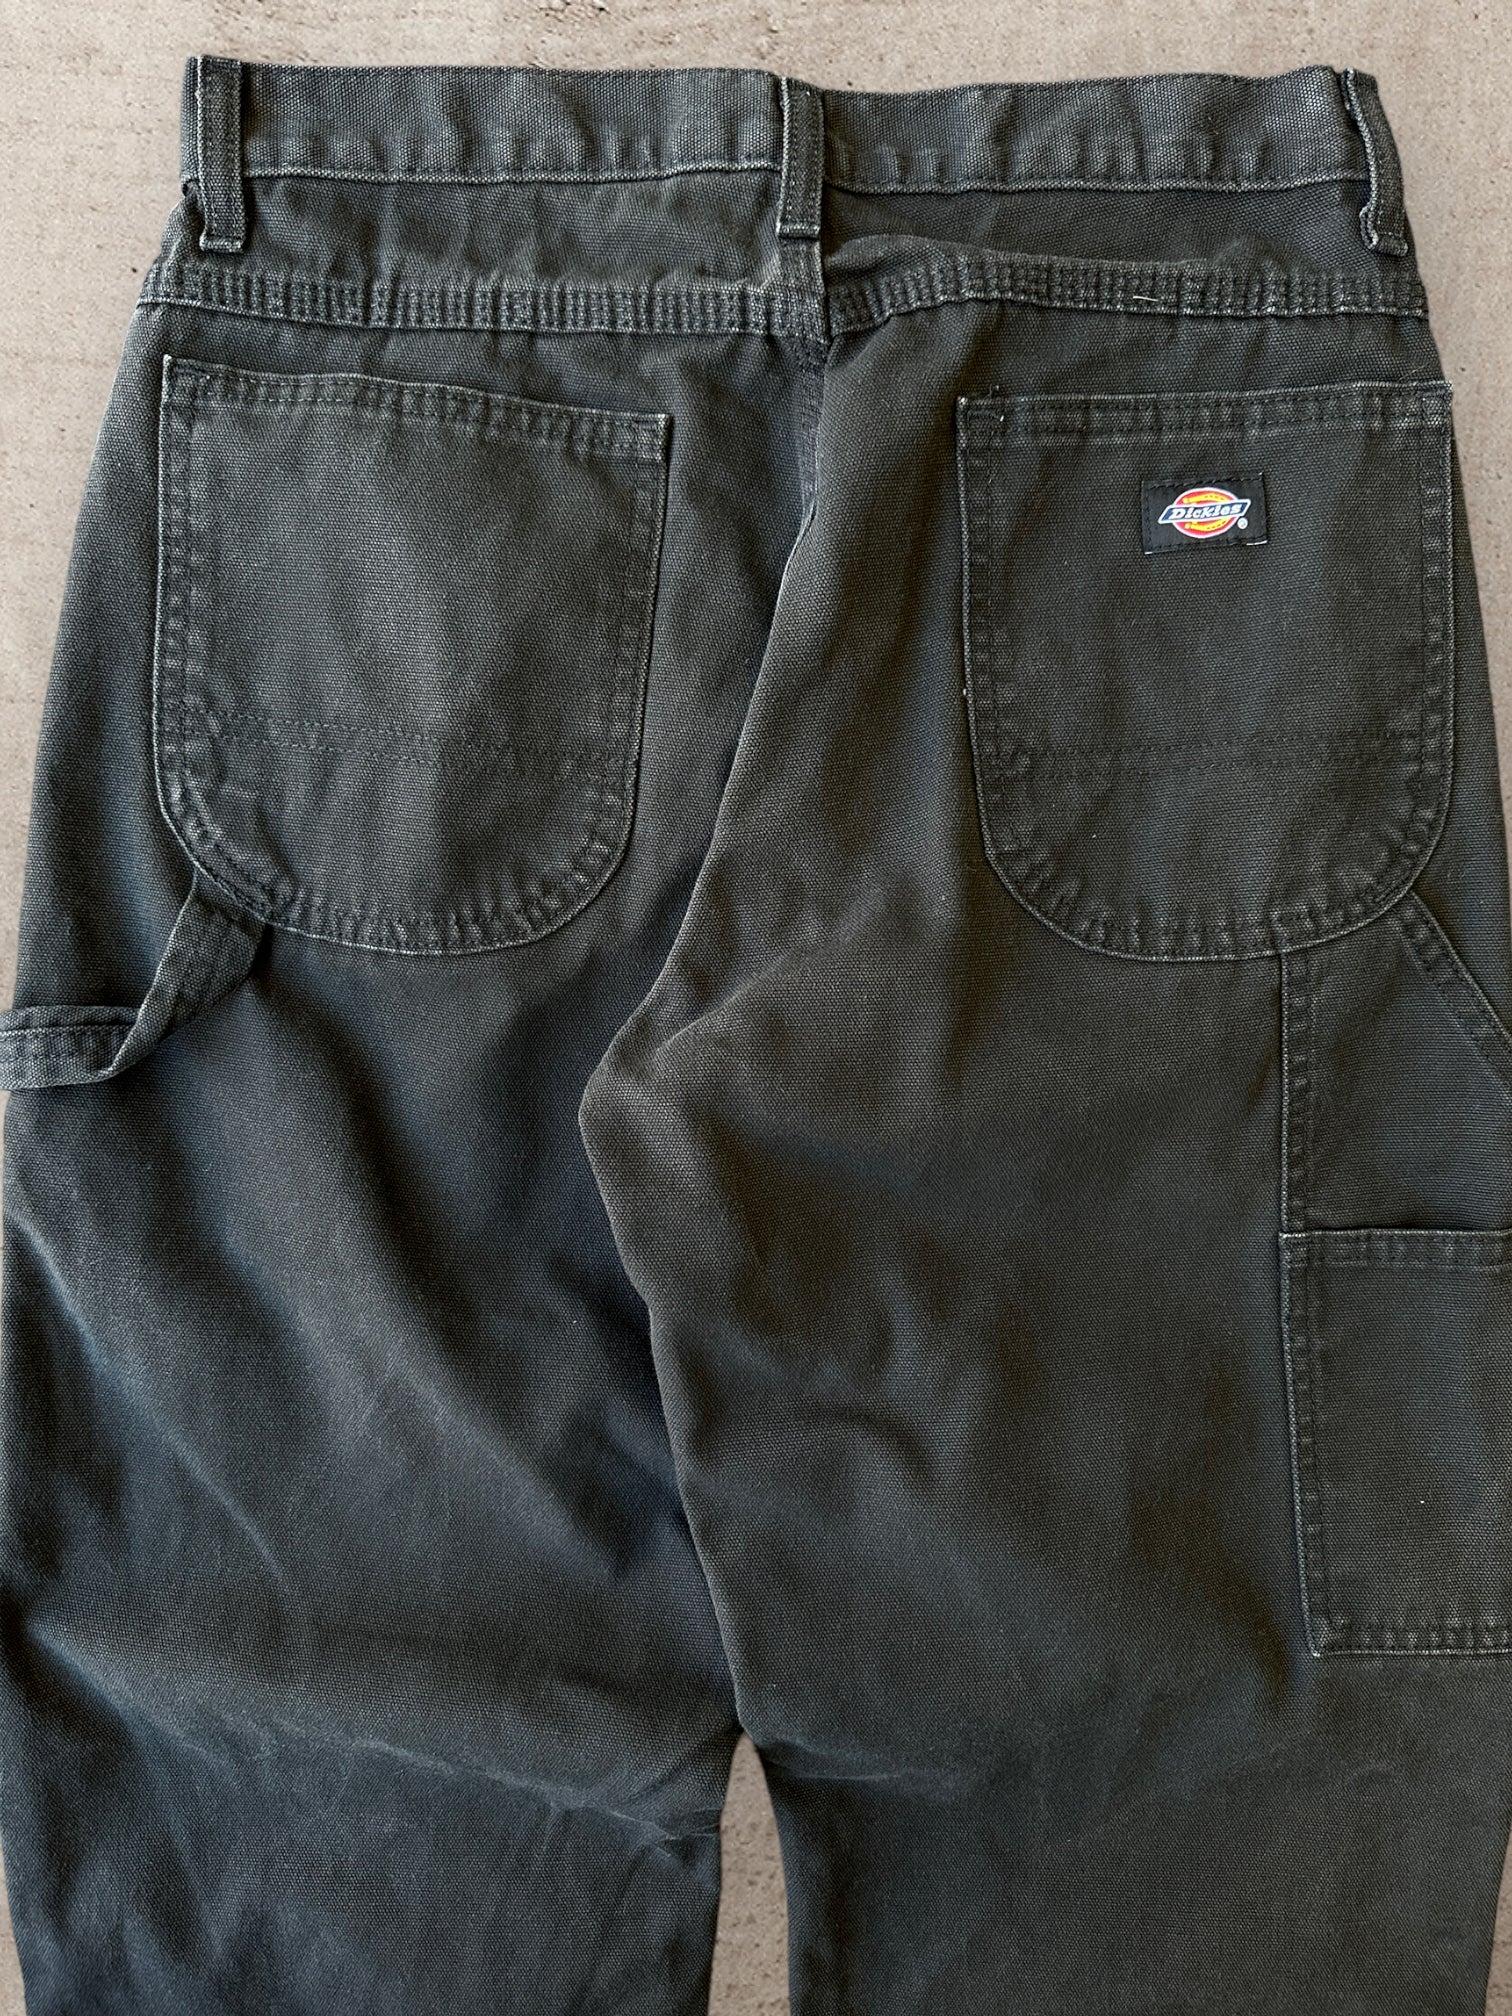 Vintage Dickies Black  Carpenter Pants - 30x27